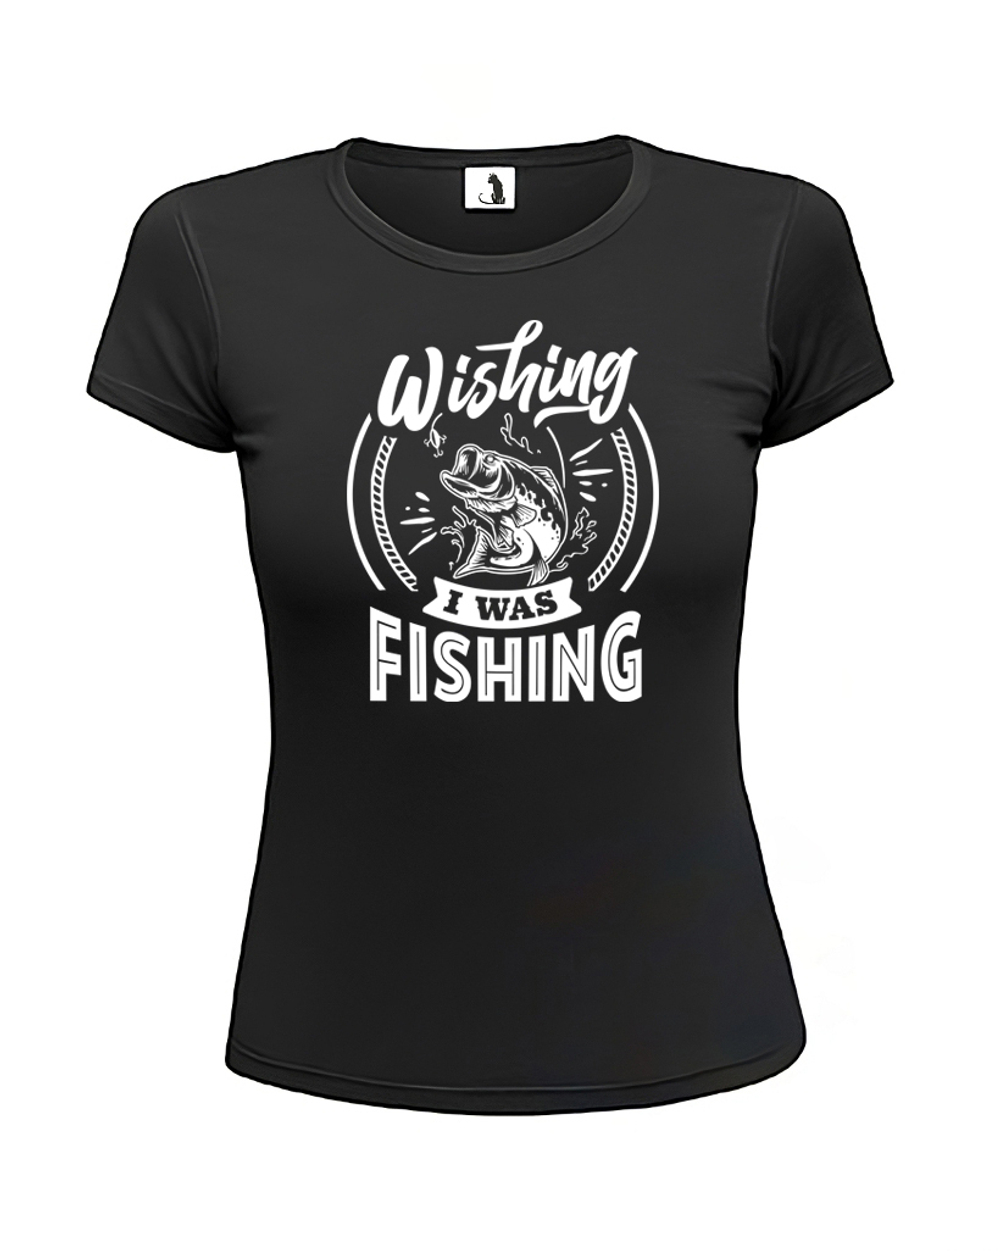 Футболка Wishing I was fishing женская приталенная черная с белым рисунком